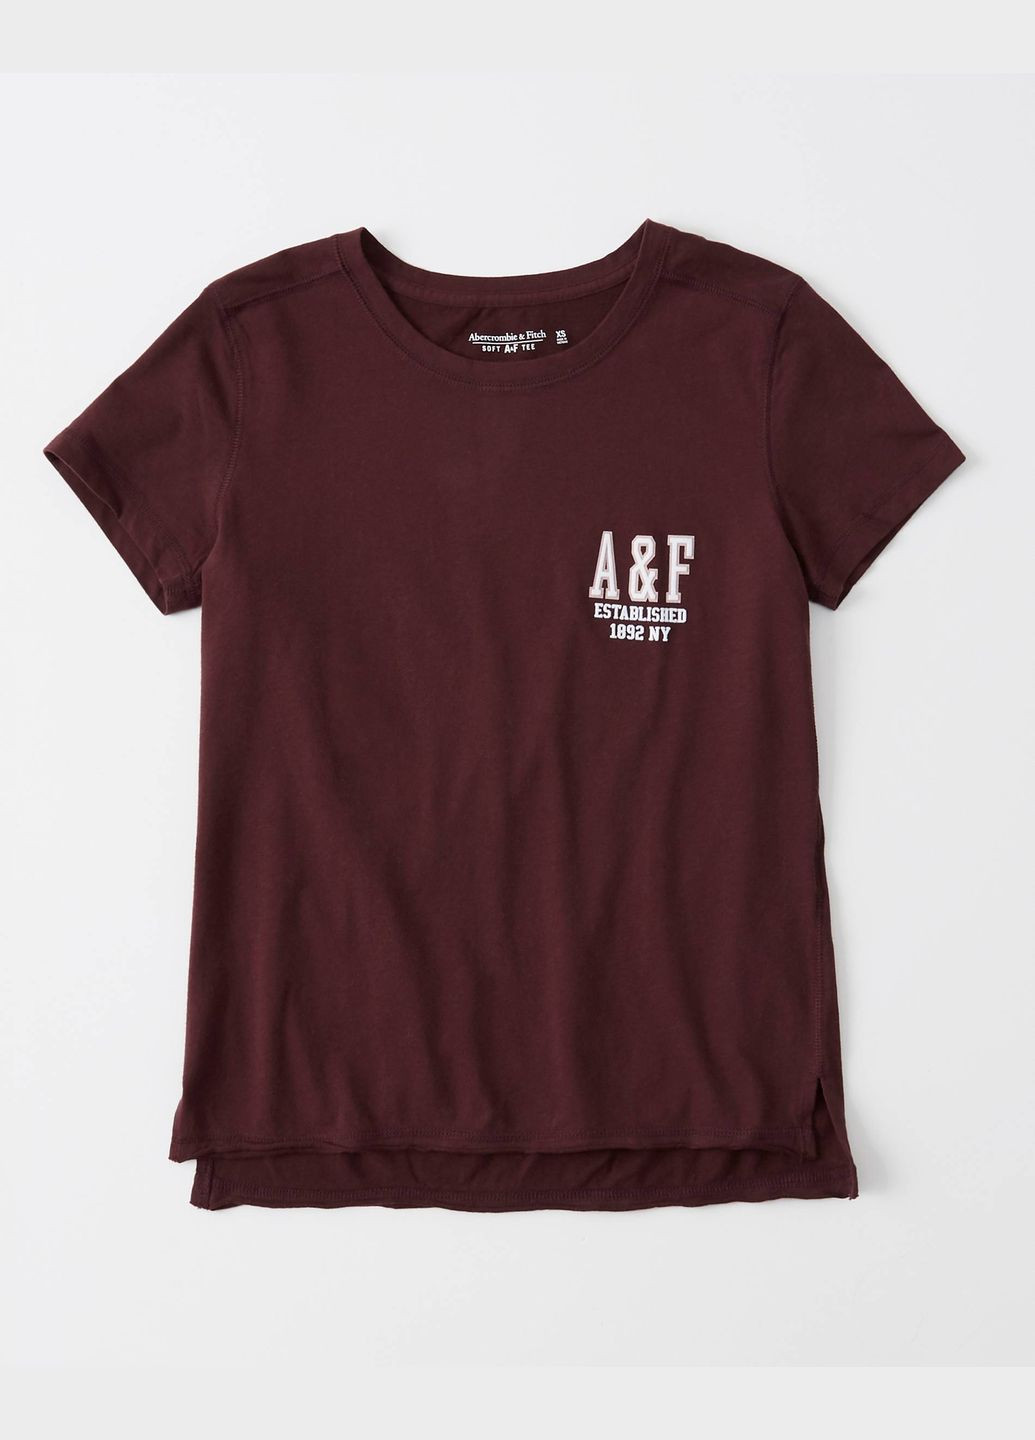 Бордовая летняя бордовая футболка - женская футболка af7003w Abercrombie & Fitch